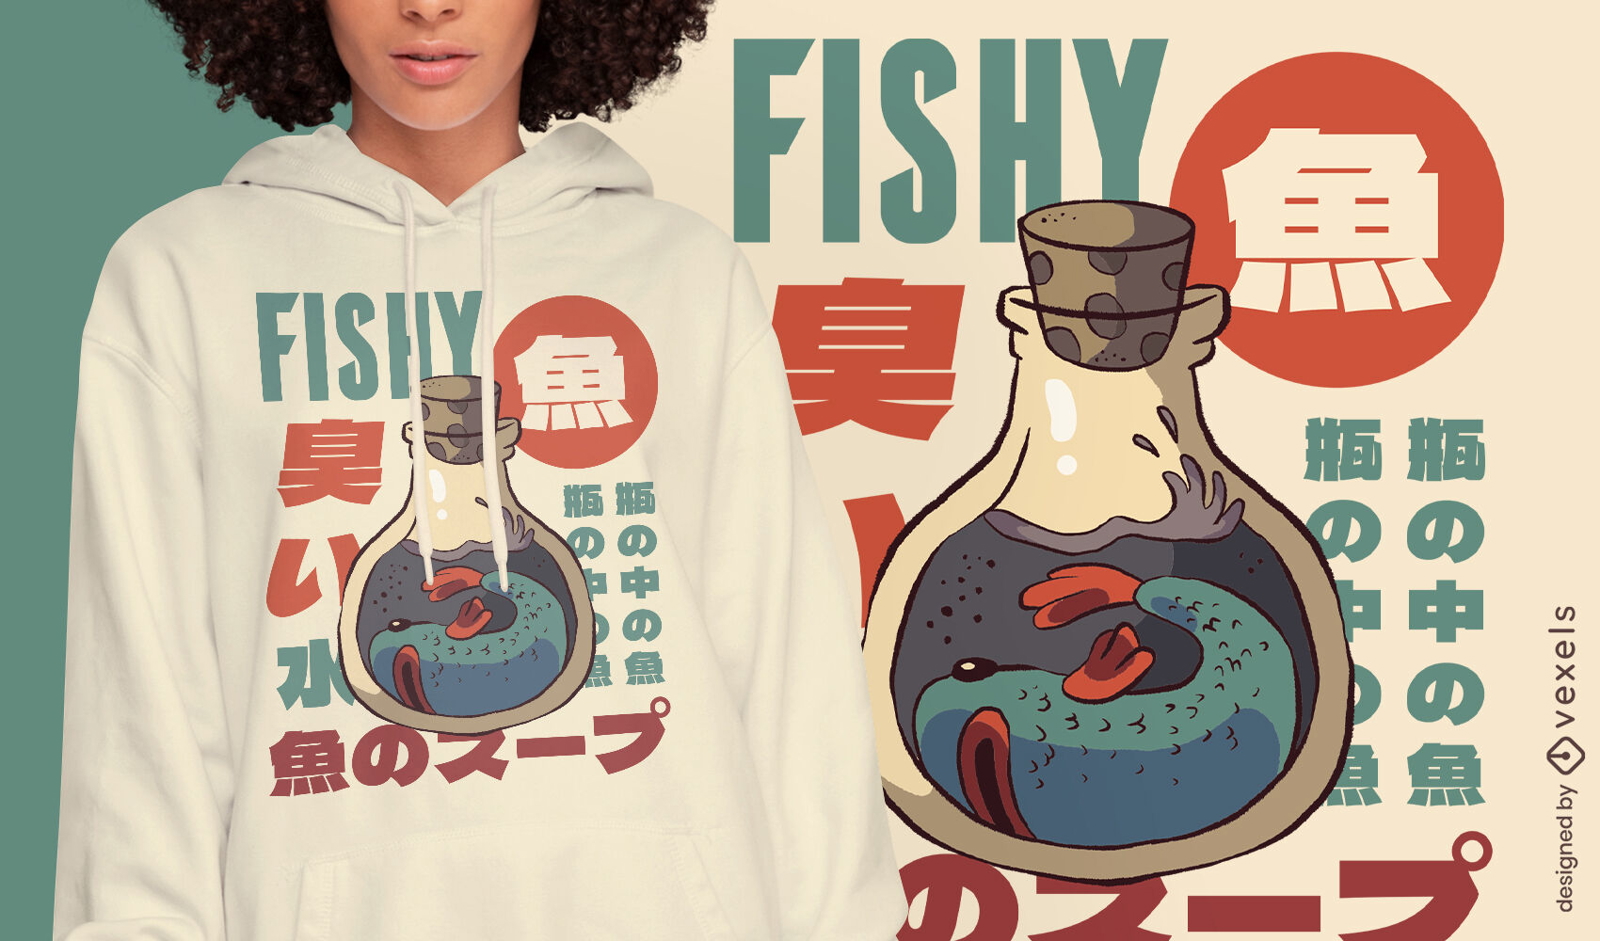 Fisch-Meerestier in einem T-Shirt-Design